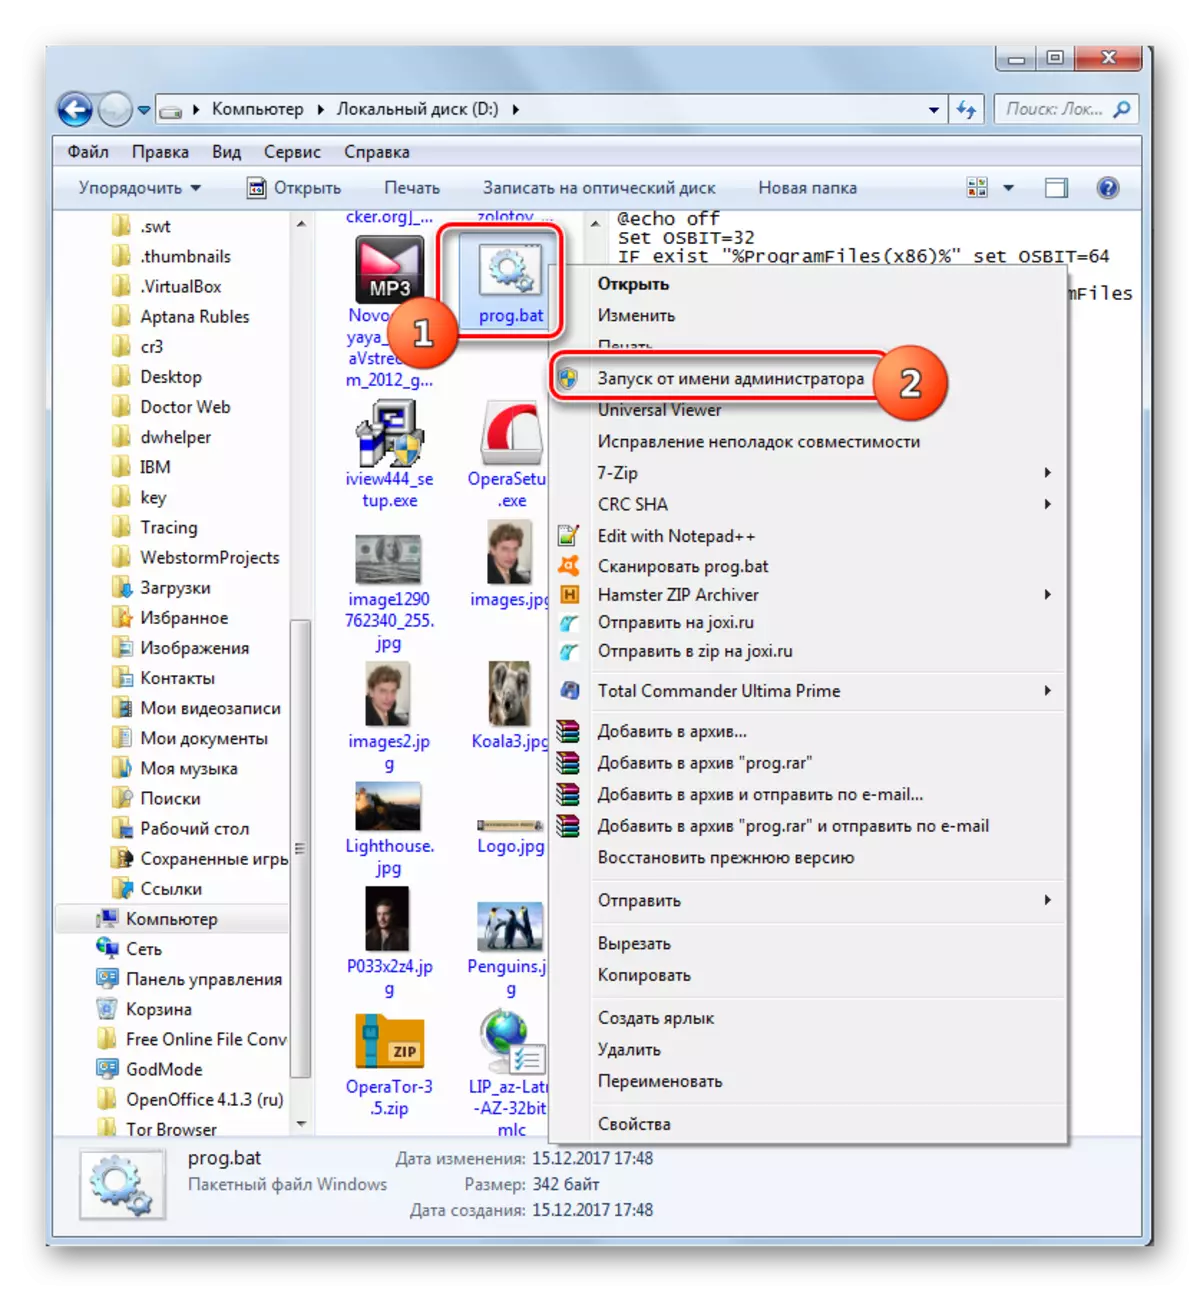 विंडोज 7 में एक्सप्लोरर में संदर्भ मेनू के माध्यम से व्यवस्थापक की ओर से स्क्रिप्ट शुरू करना